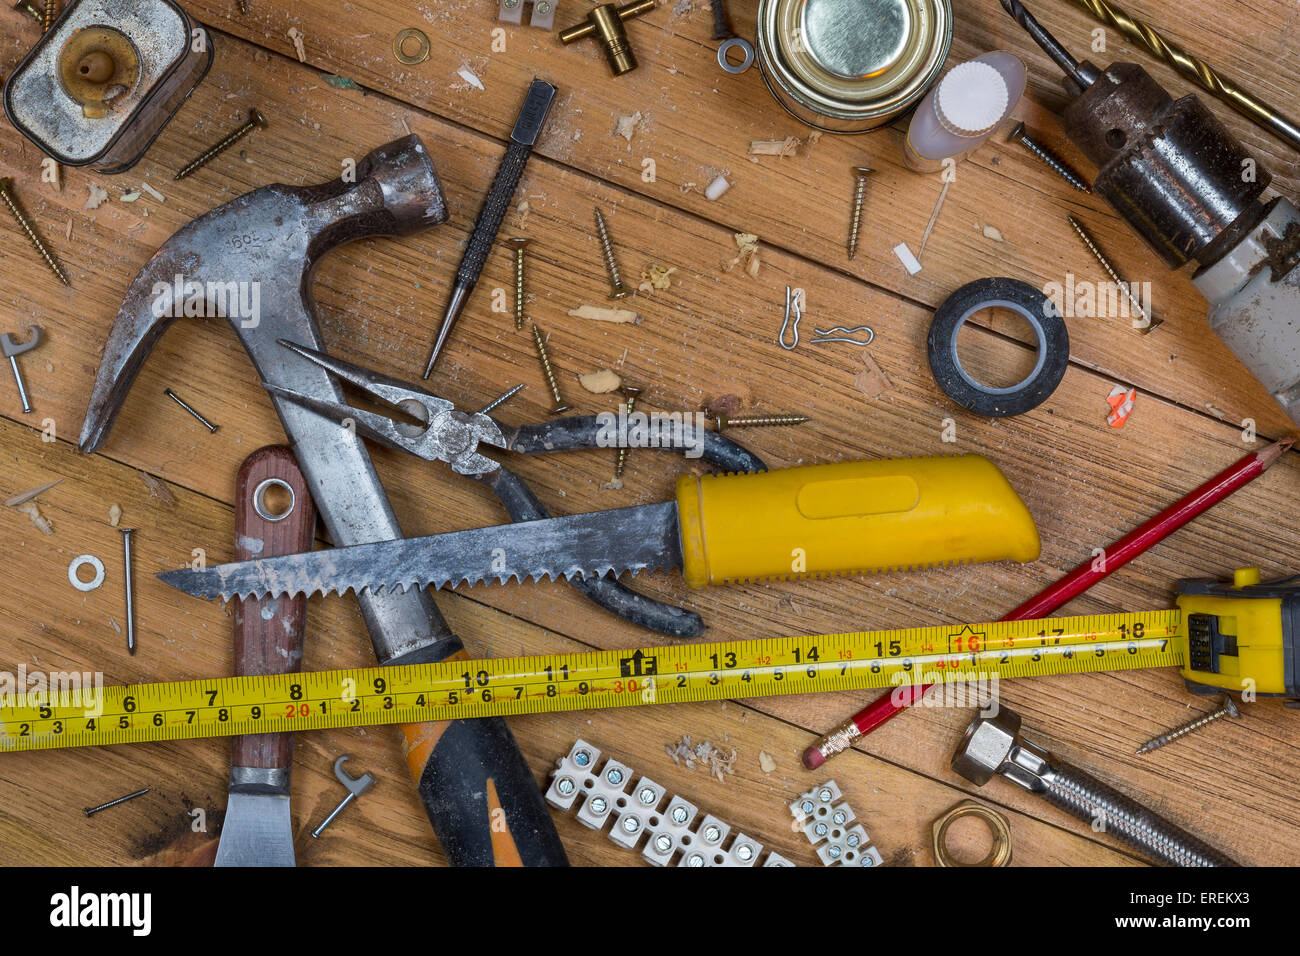 Bohren Sie Schrauben Nägel Hammer Stockfotos und -bilder Kaufen - Alamy